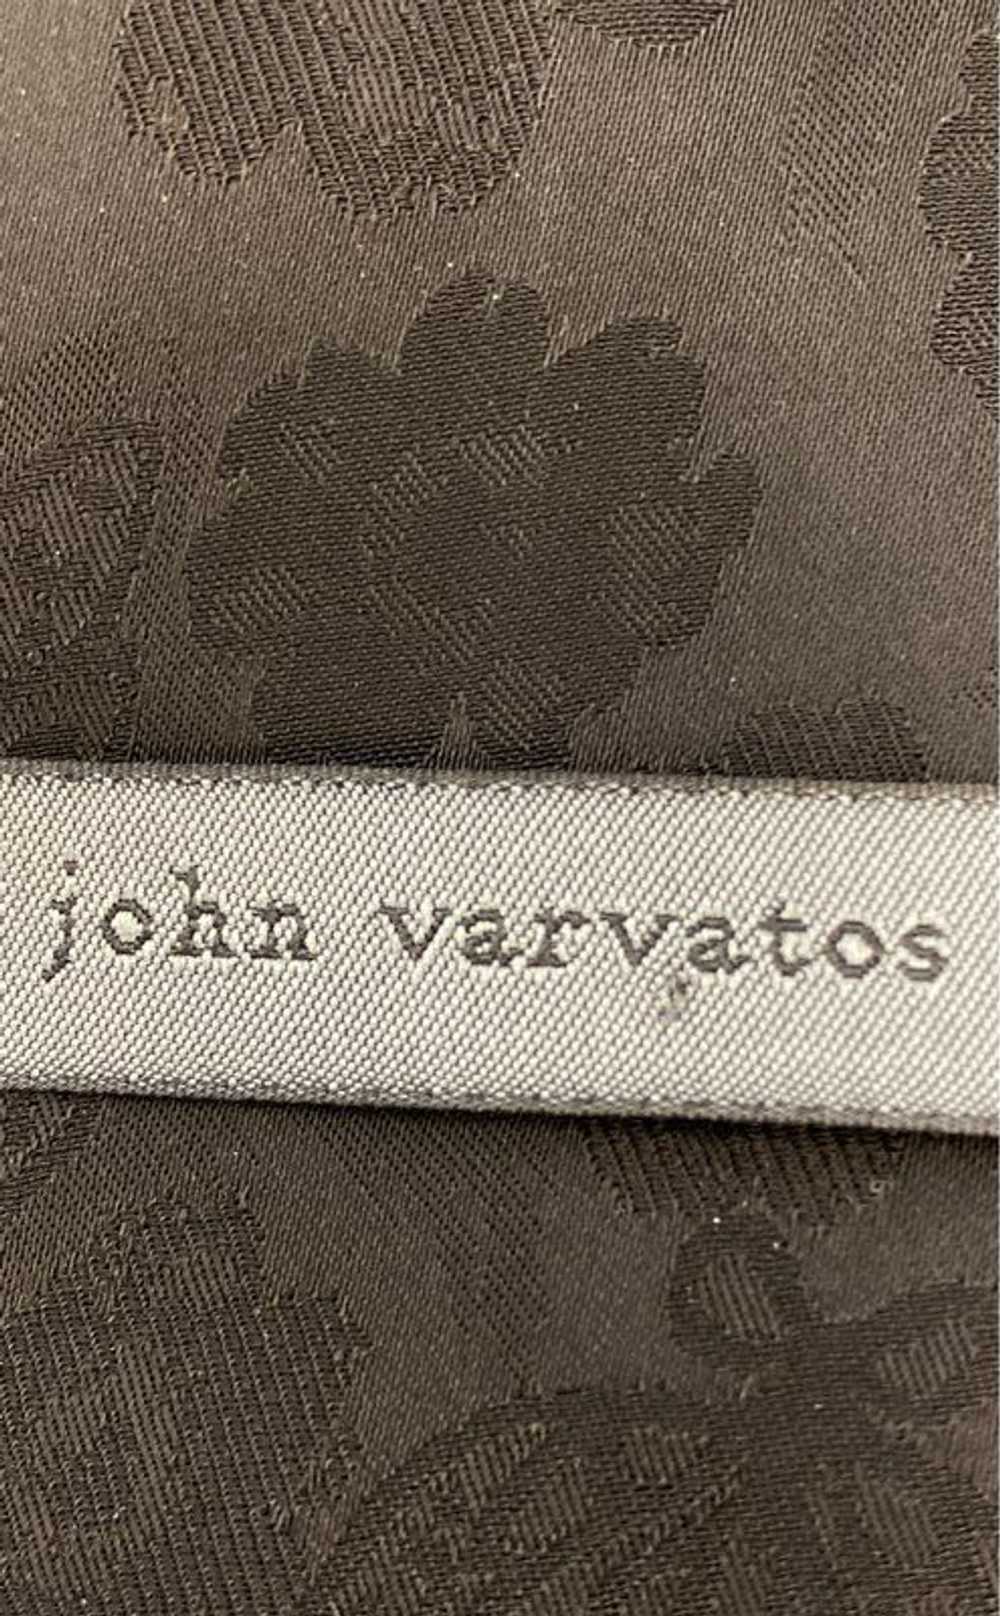 John Varvatos Black Jacket - Size 56 - image 3